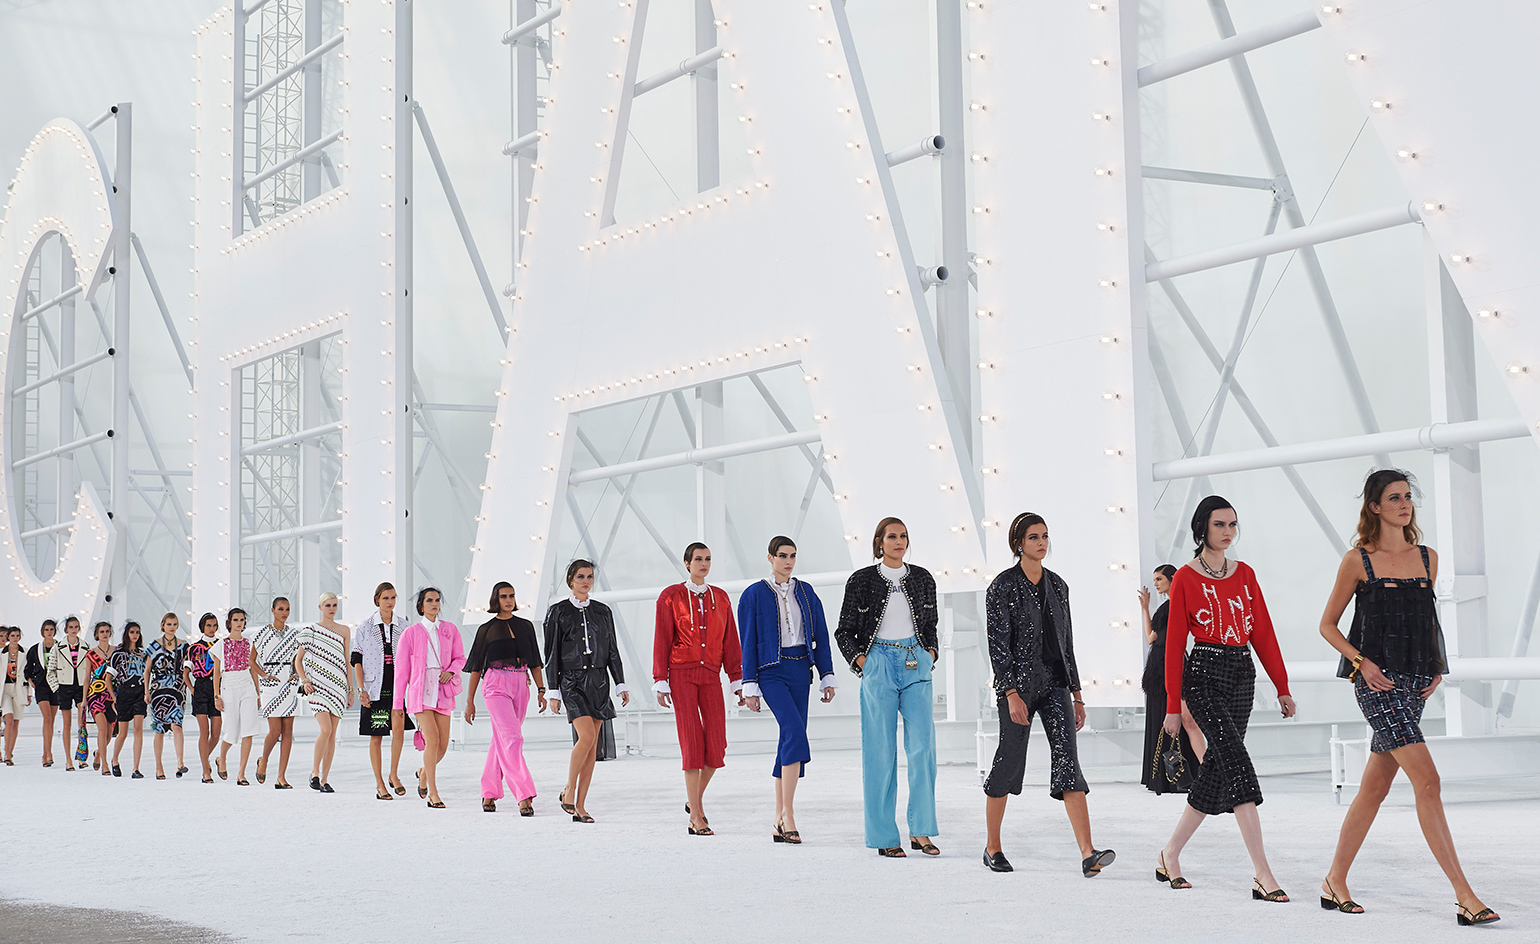 Walk This Way: Navigating S S 2021's Paris Fashion Week. Wallpaper*